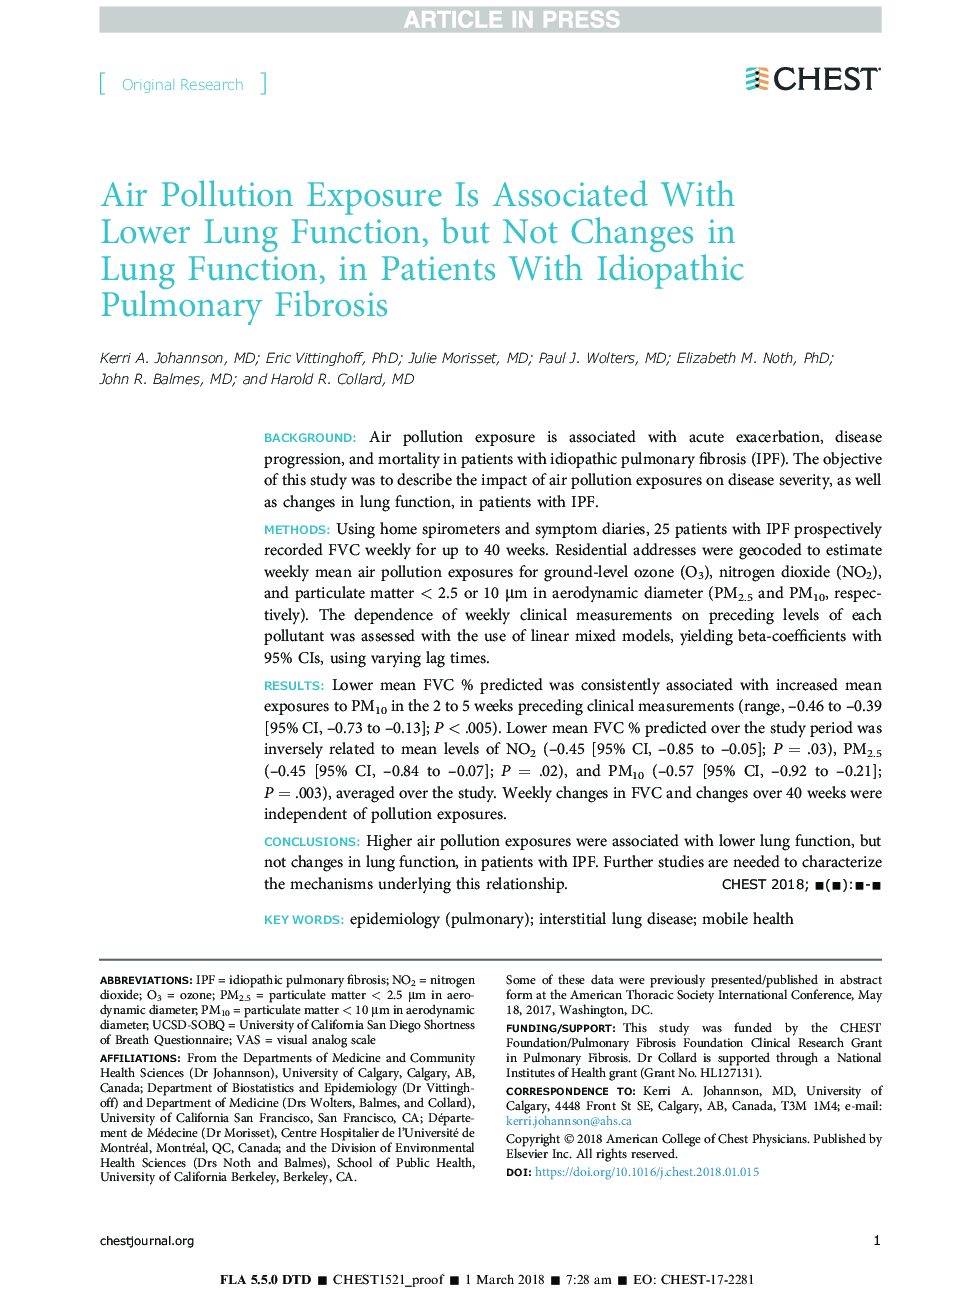 قرار گرفتن در معرض آلودگی هوا با عملکرد پایین ریه ارتباط دارد، اما تغییرات در عملکرد ریه را در بیماران مبتلا به فیبروز ریه ایدیوپاتیک 